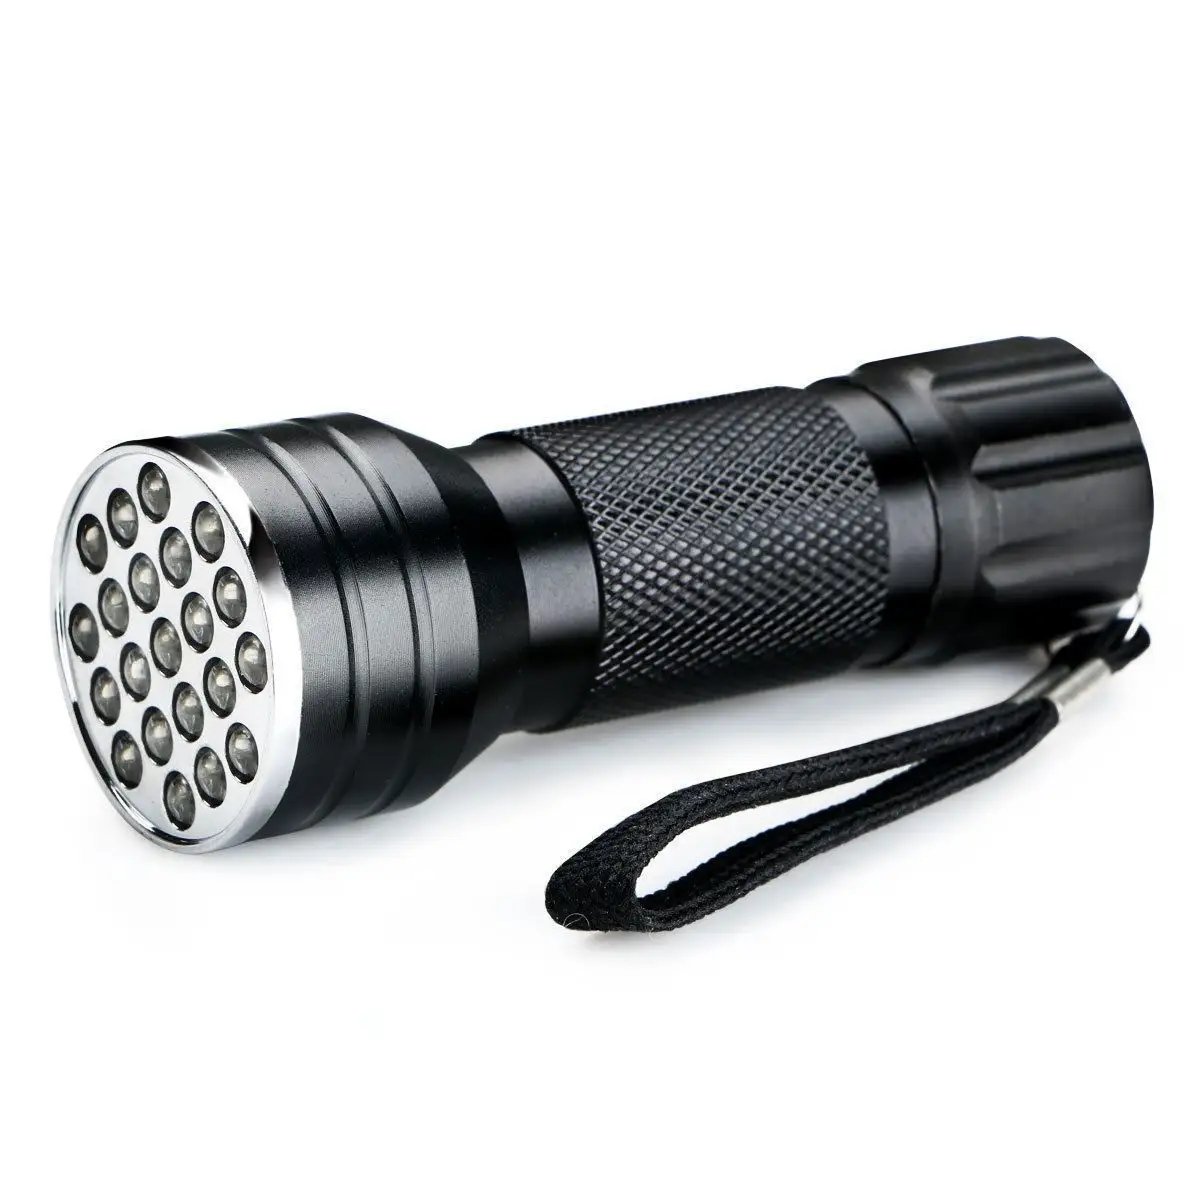 Factory Price 21 LED Aluminum Ultraviolet Black Silver Light UV Flashlight , handheld UV Torch Outdoor